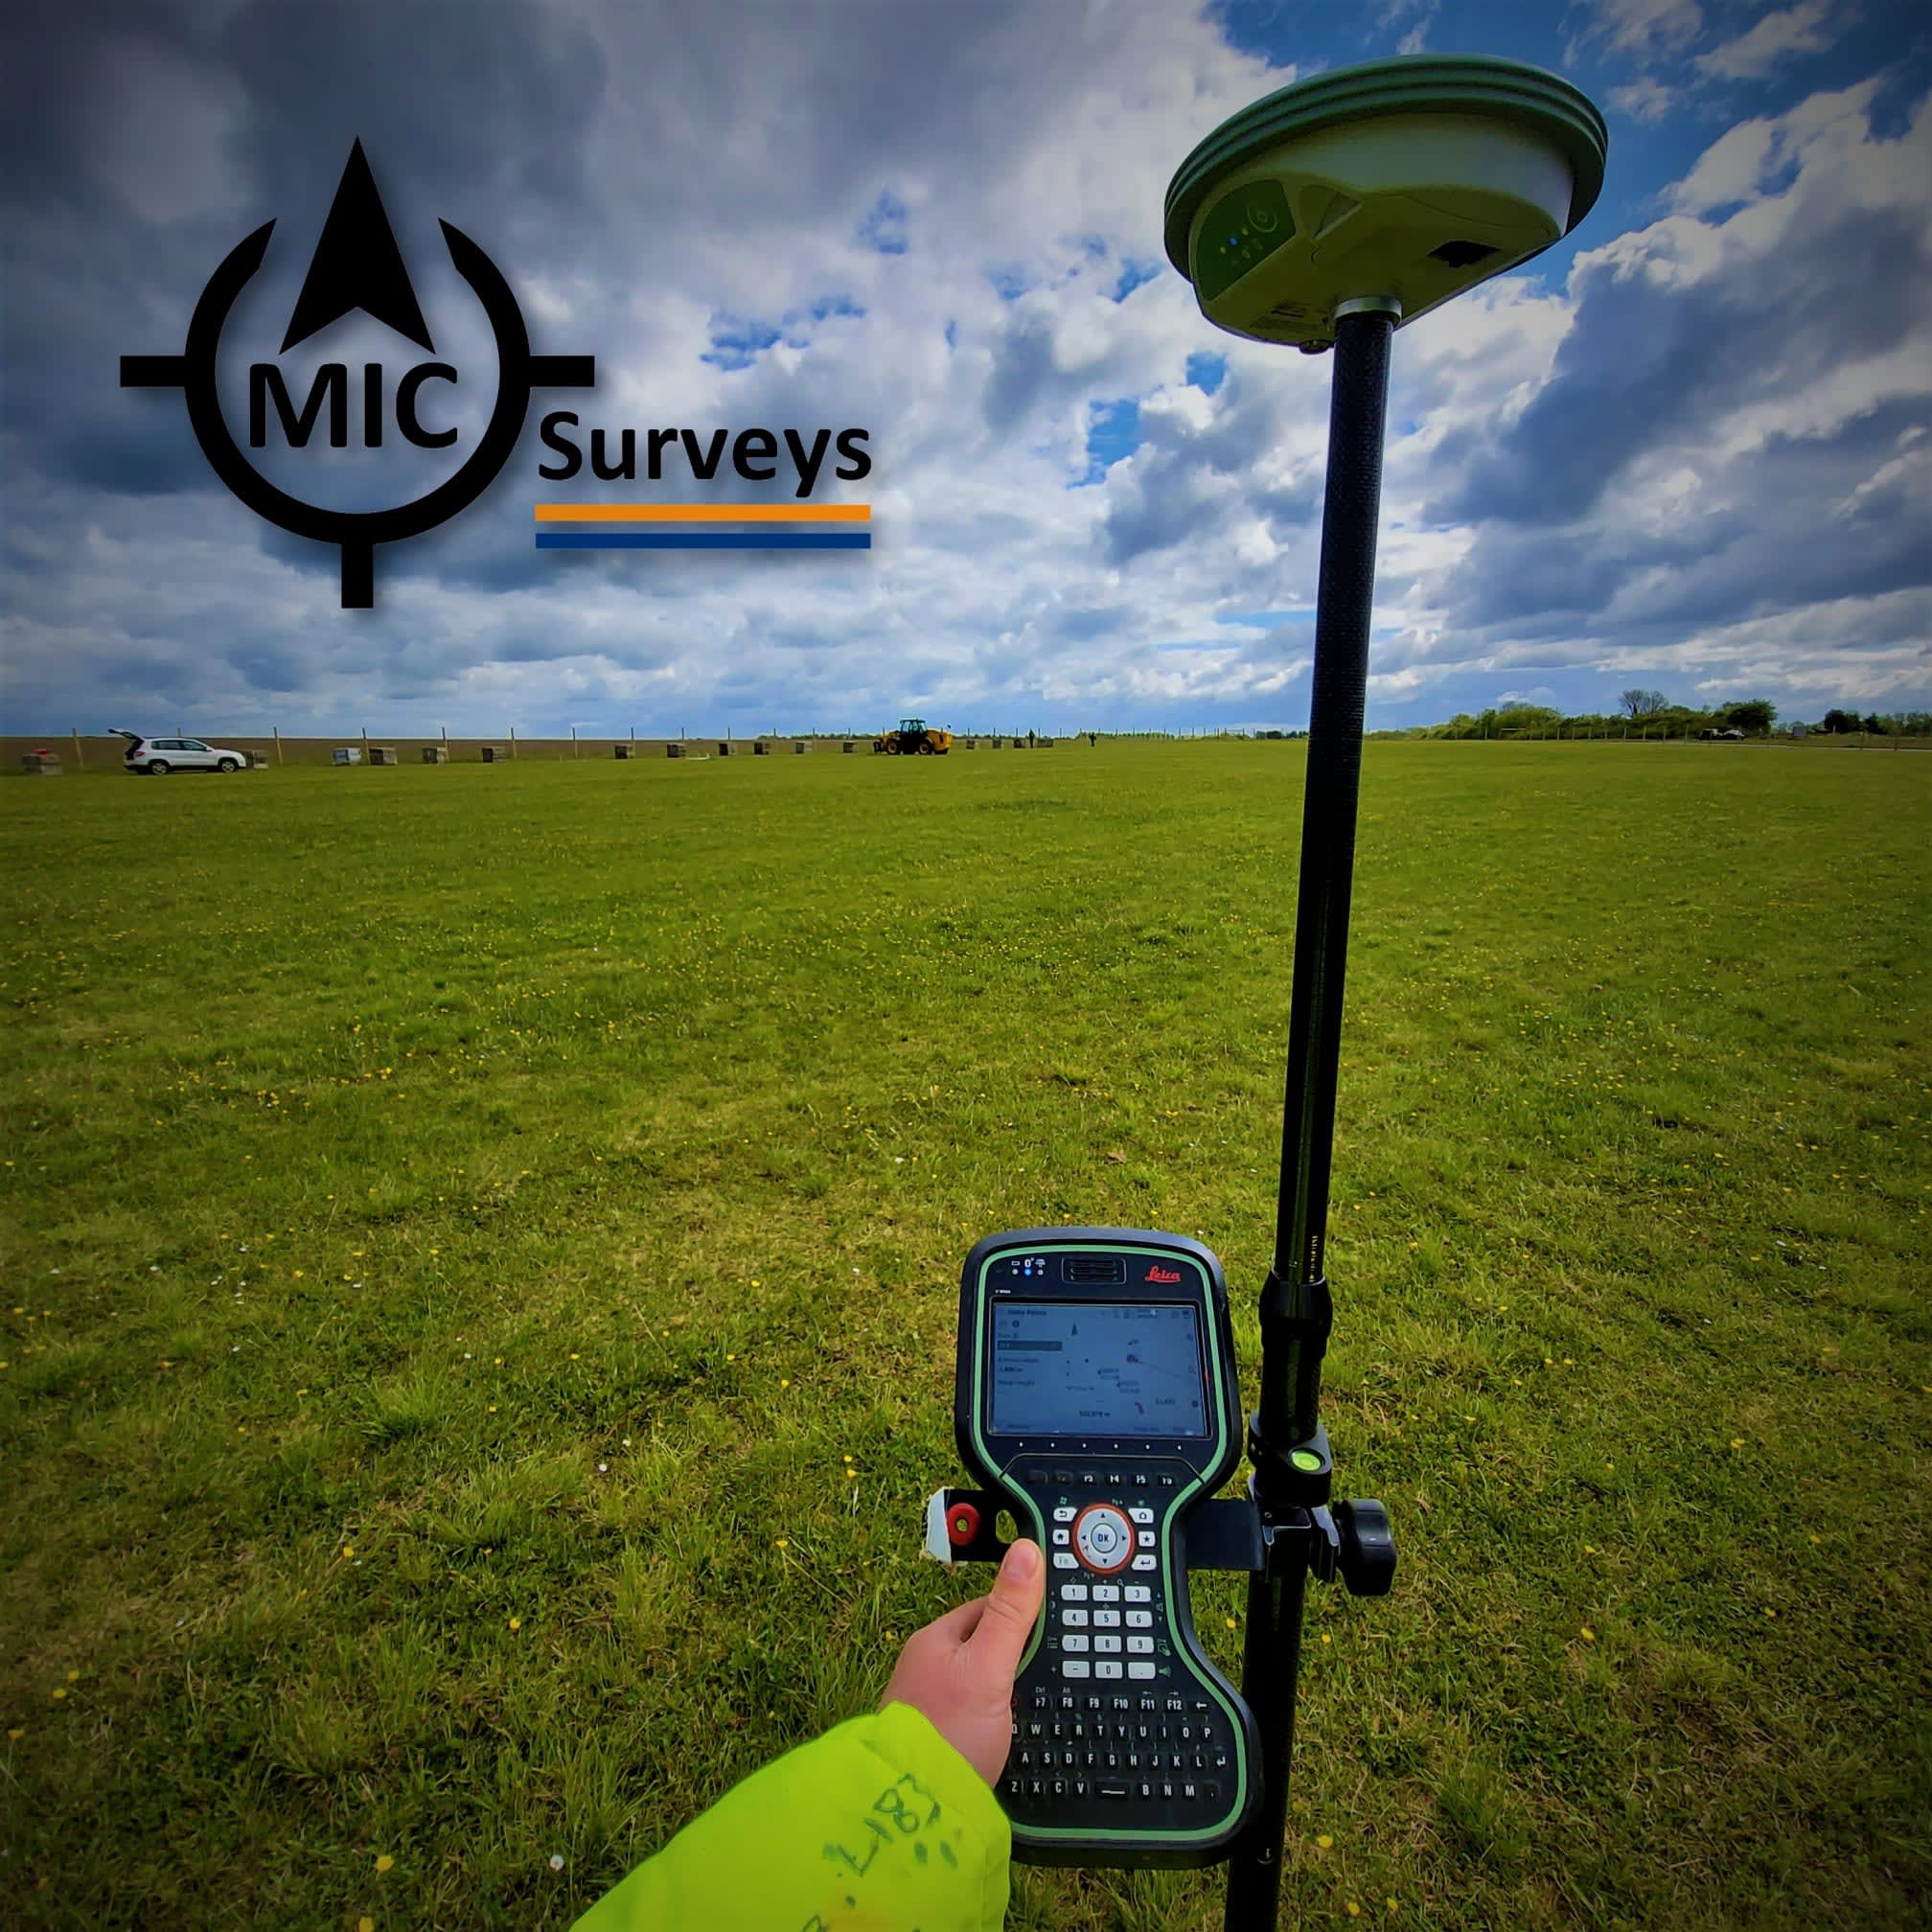 Images MIC Survey Ltd